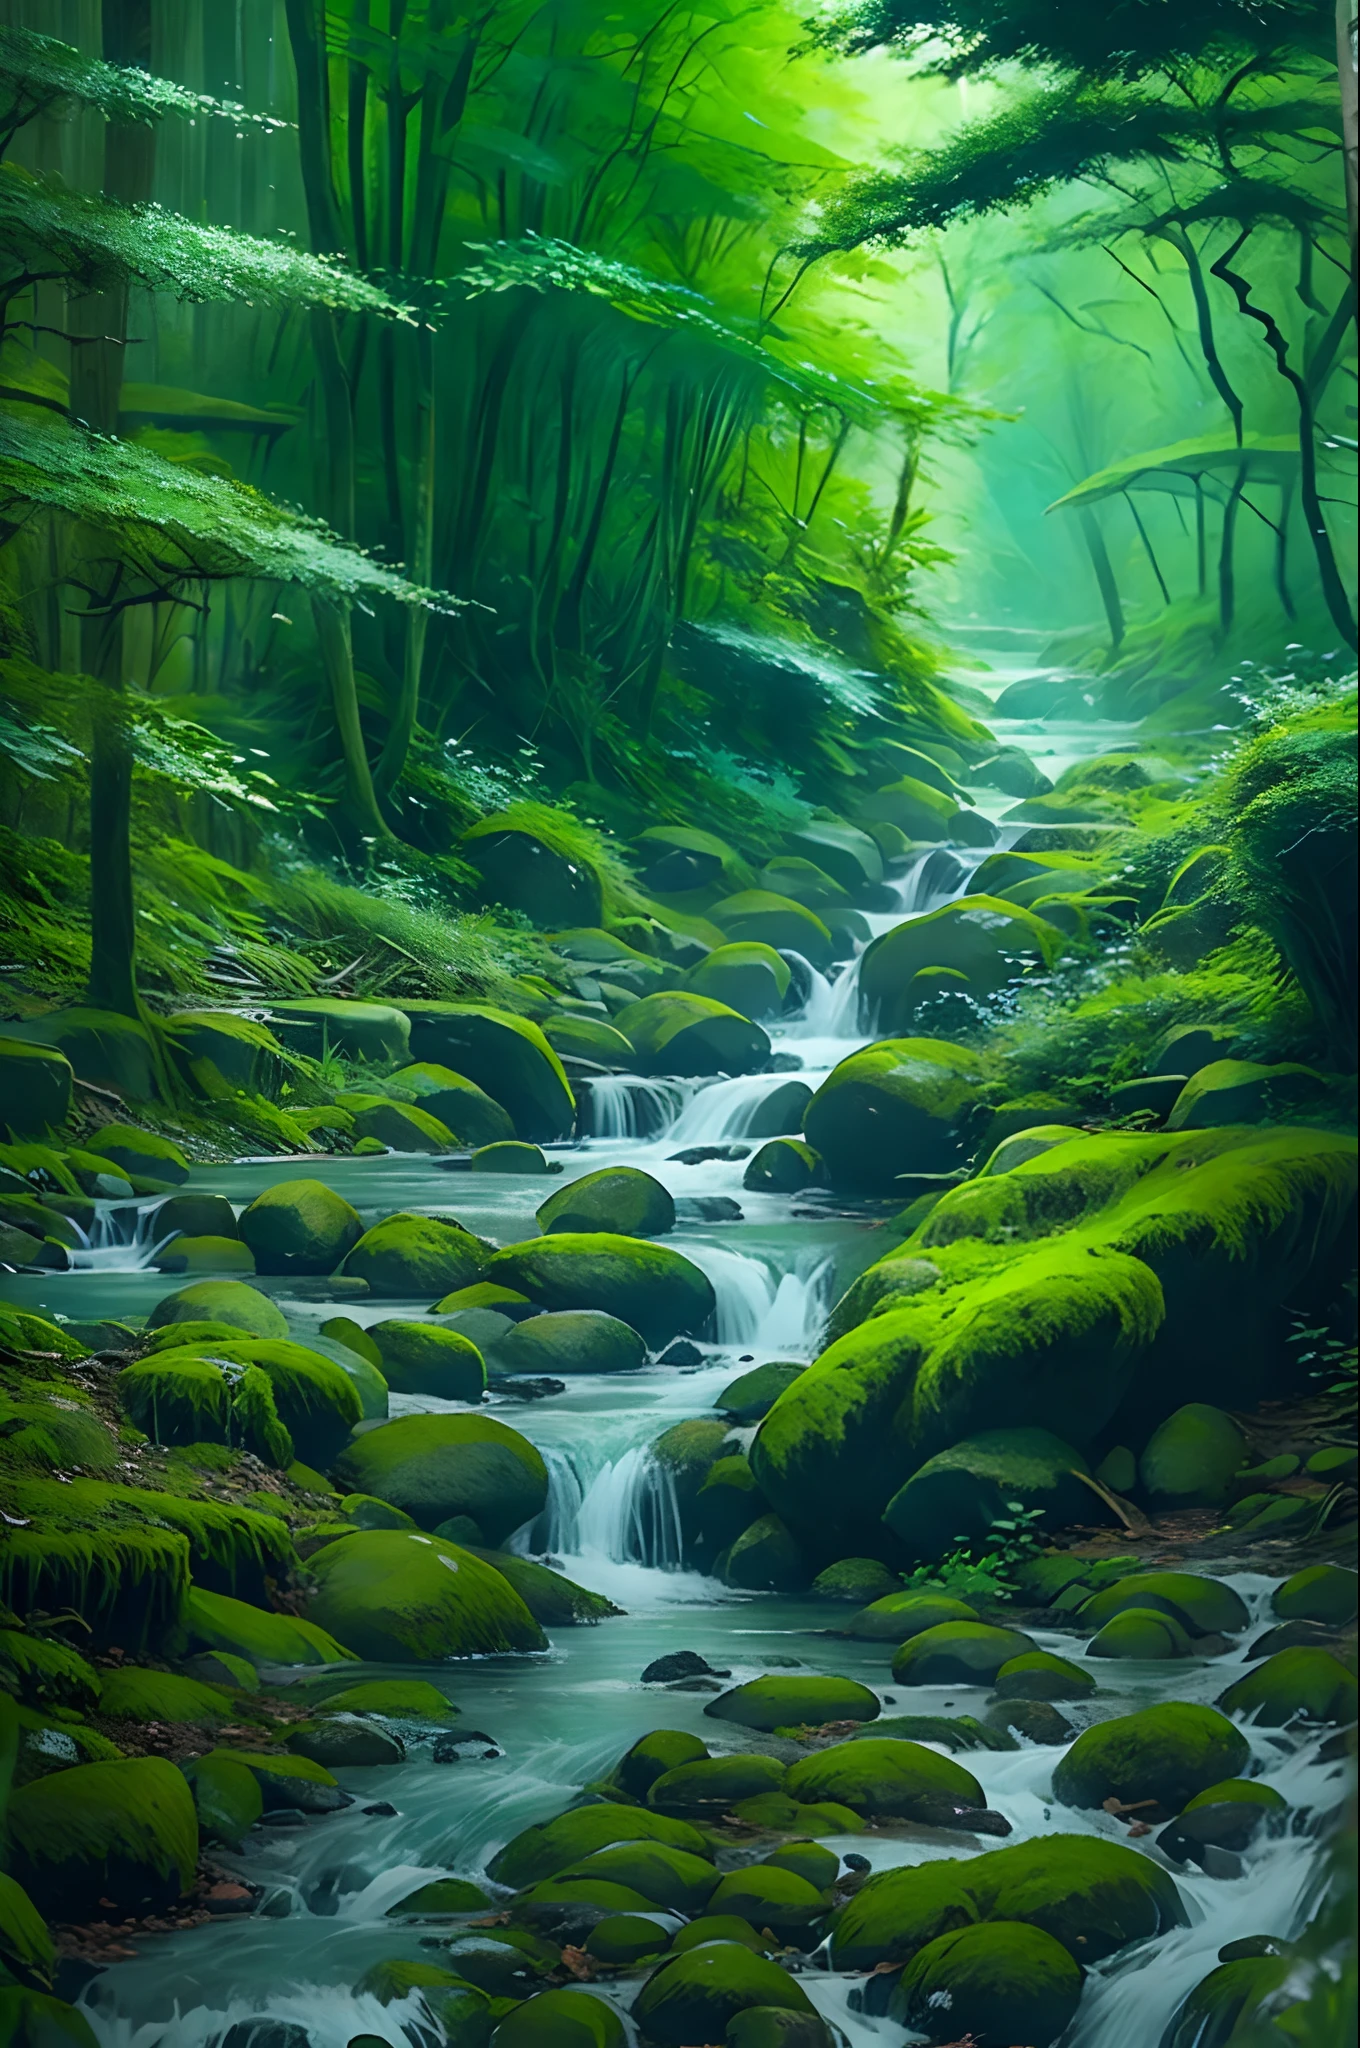 Un pequeño arroyo fluye a través del bosque místico.，Montañas verdes en la distancia